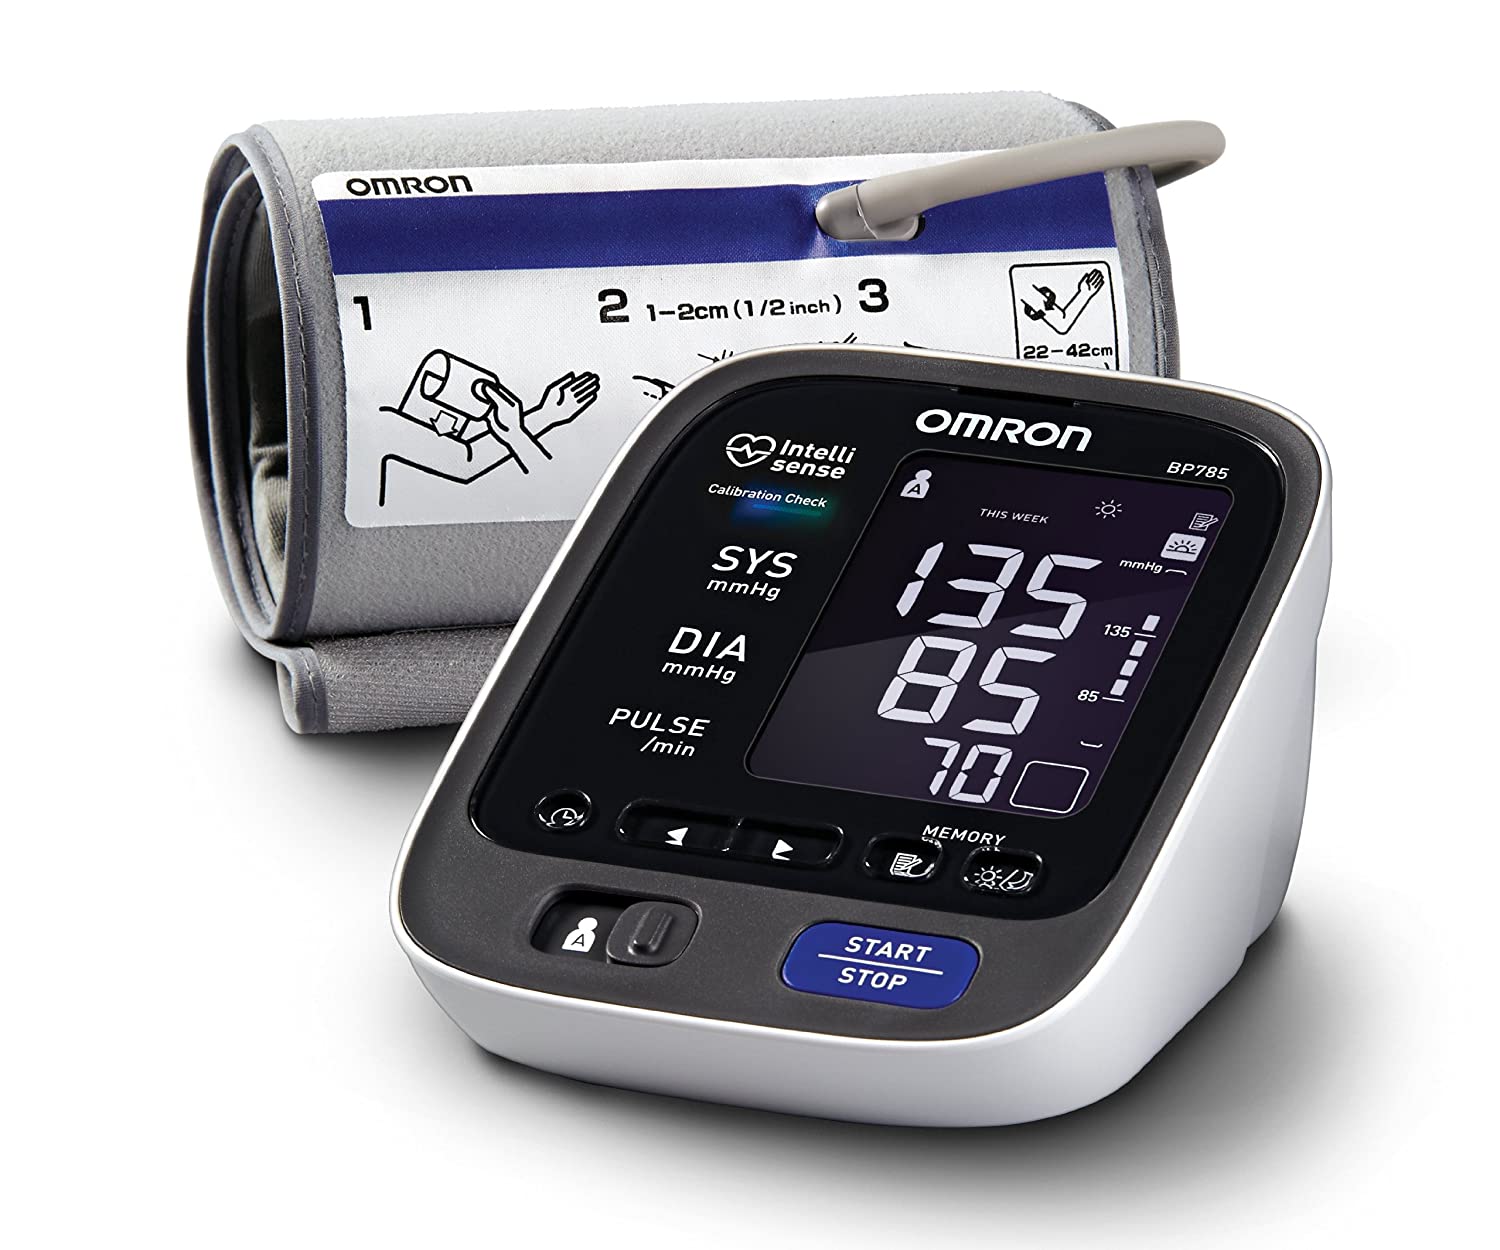 Omron 10 Series Blood Pressure Monitor Manual BP785